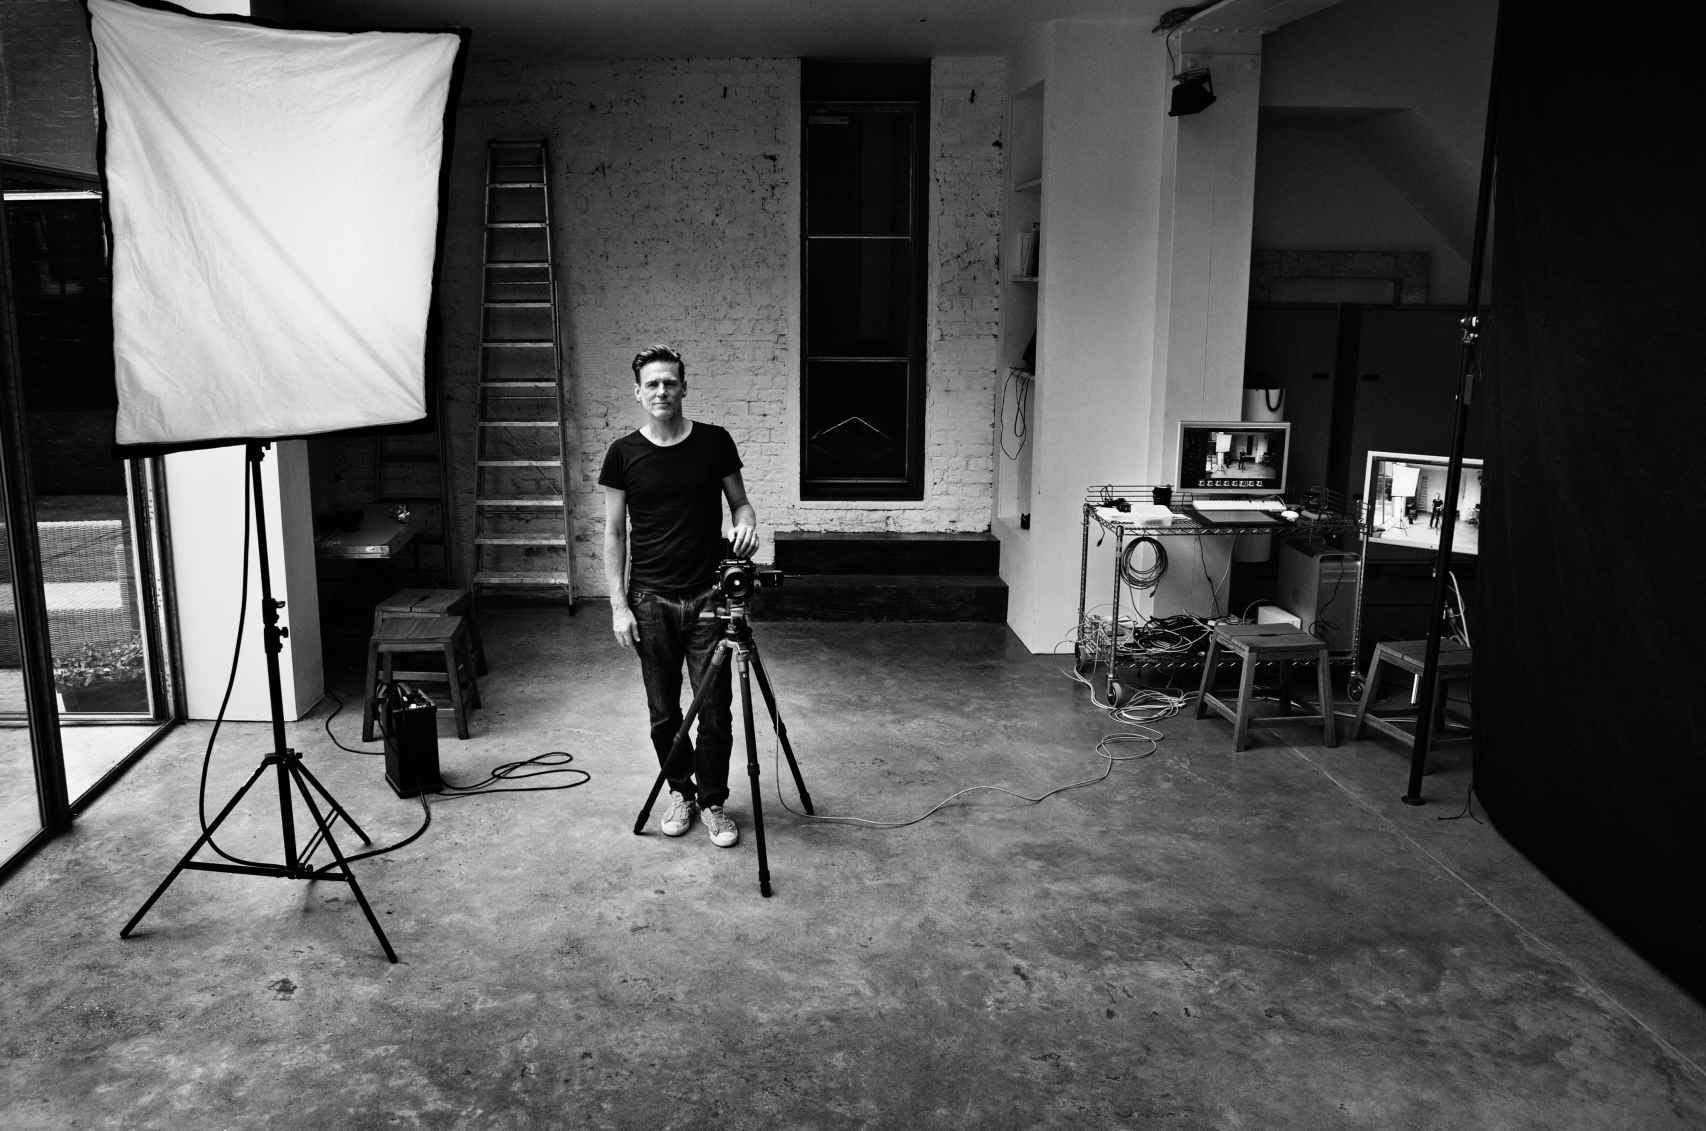 Autorretrato de Bryan Adams en su estudio, Londres, 2011. © Bryan Adams